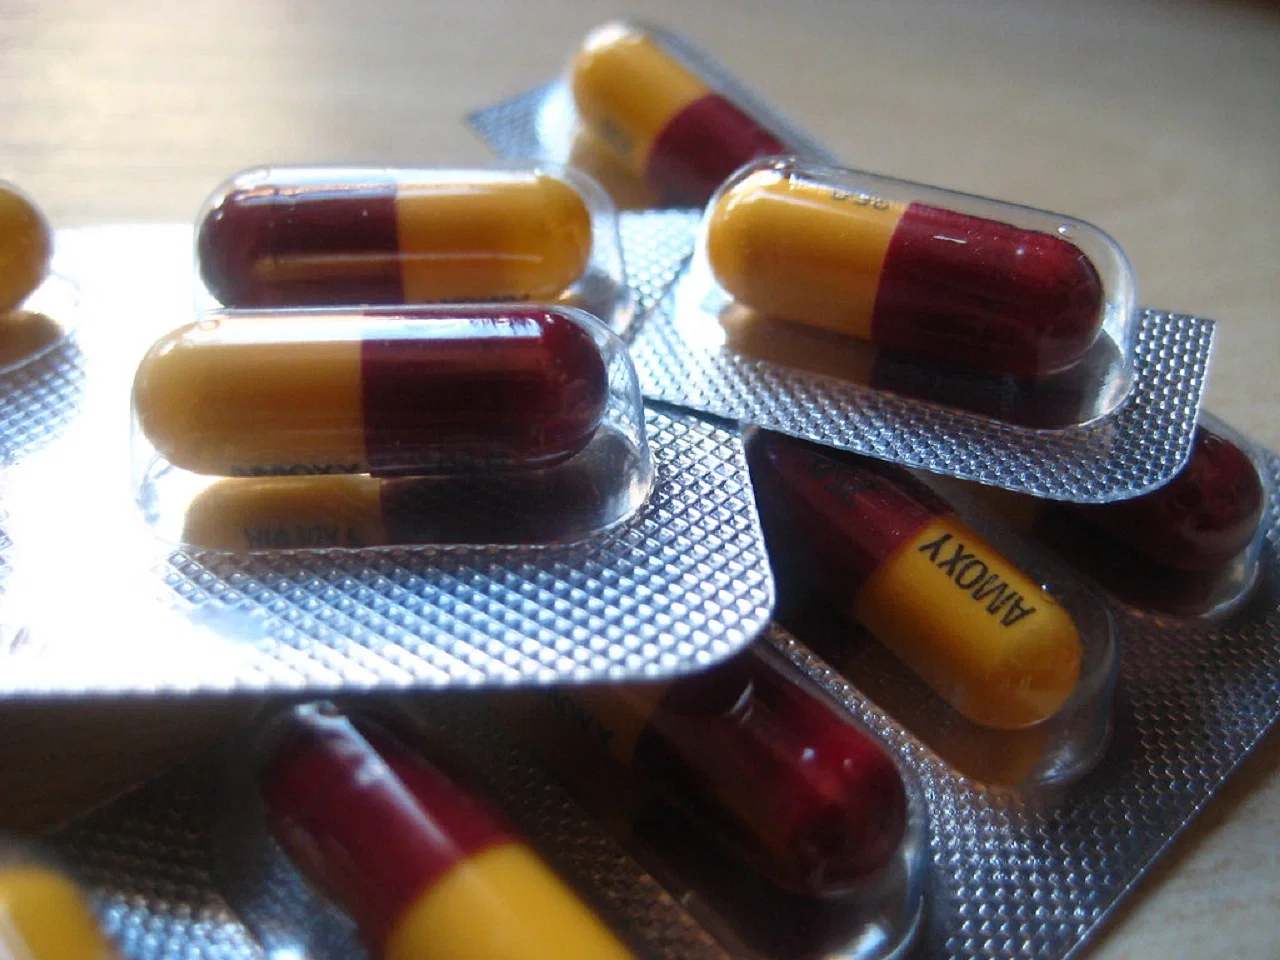 Αντιβίωση: Η συχνή χρήση αντιβιοτικών μπορεί να αυξήσει τον κίνδυνο φλεγμονώδους νόσου του εντέρου σε ενήλικες άνω των 40 ετών